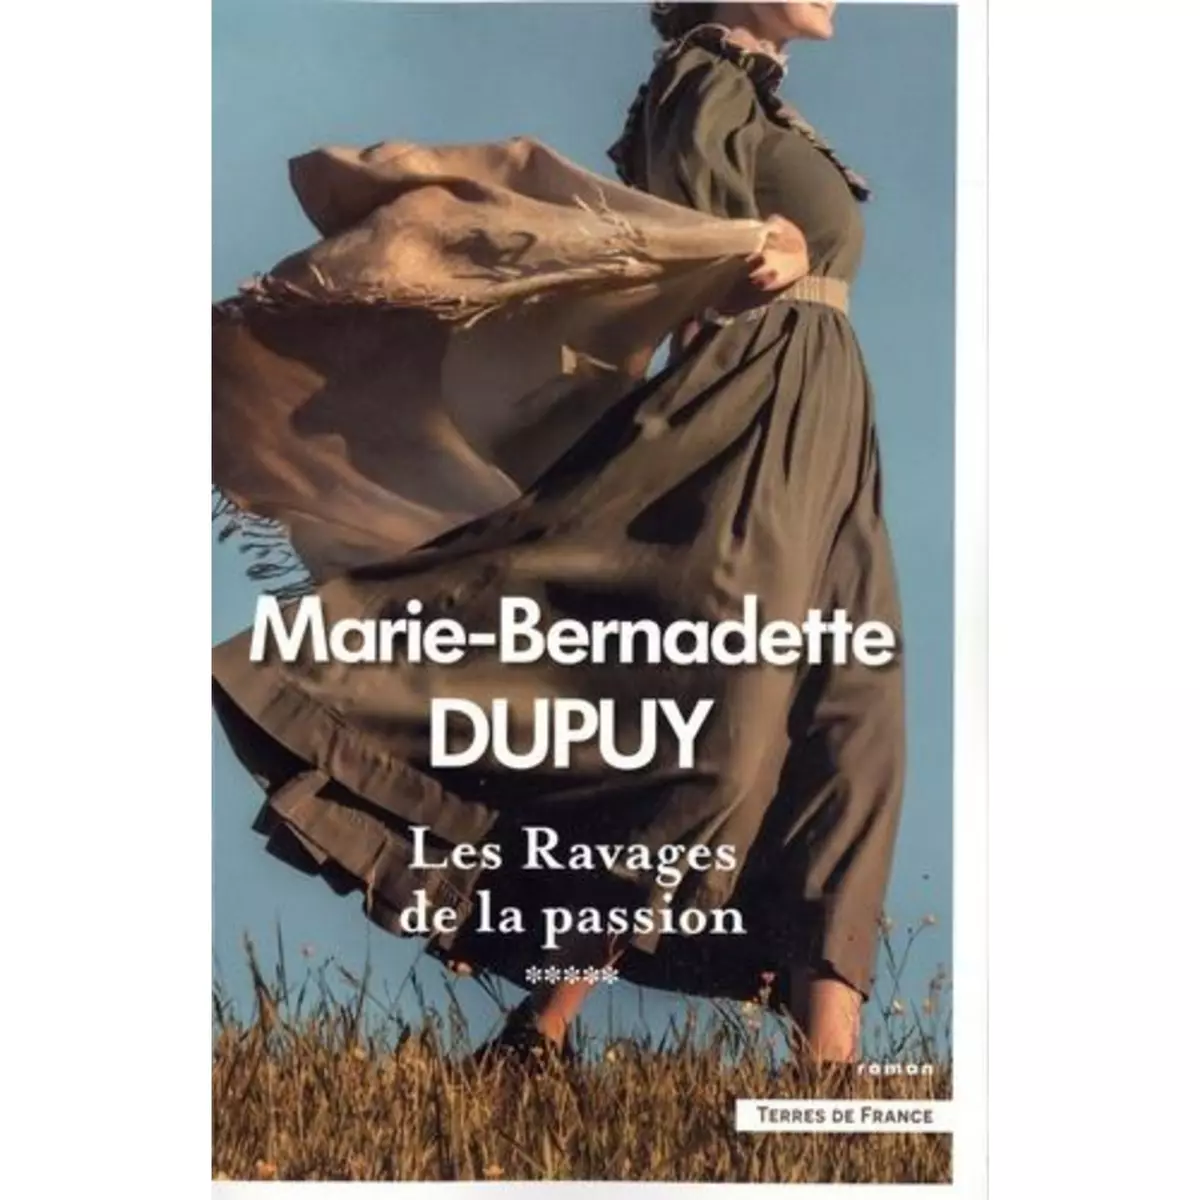  LE MOULIN DU LOUP TOME 5 : LES RAVAGES DE LA PASSION, Dupuy Marie-Bernadette